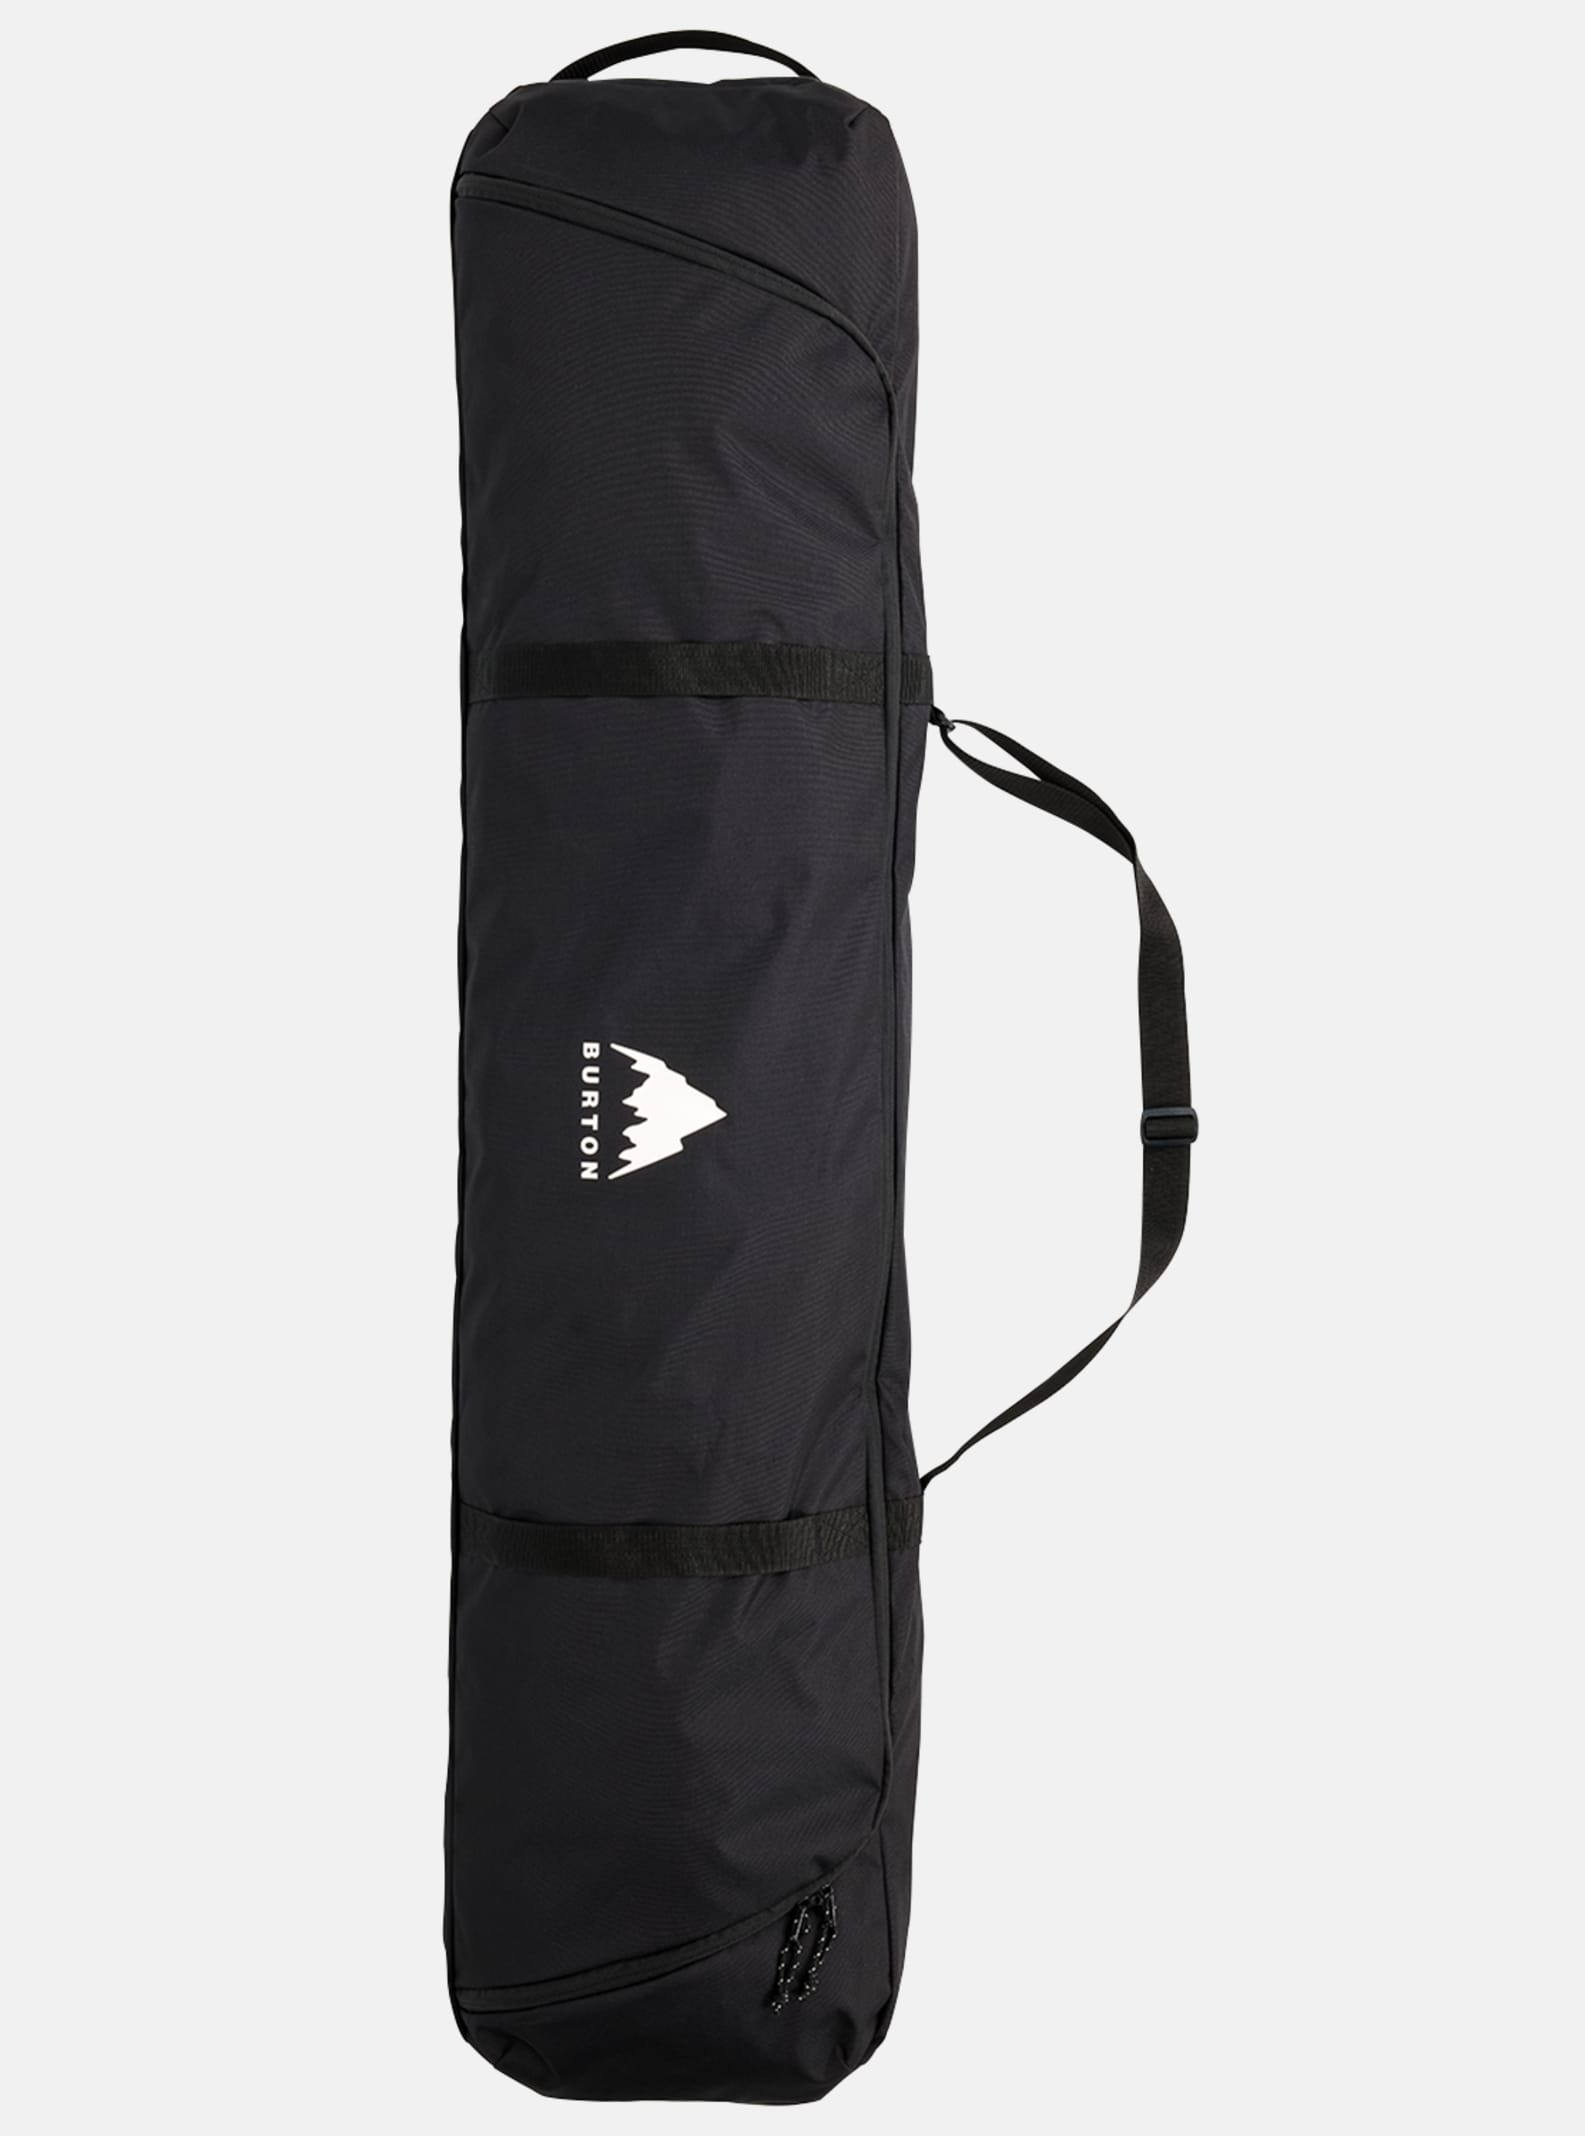 Burton Space Sack Board Bag True Black | Accesorios Snowboard | Burton Snowboards | Fundas tablas de snowboard | Snowboard Shop | surfdevils.com